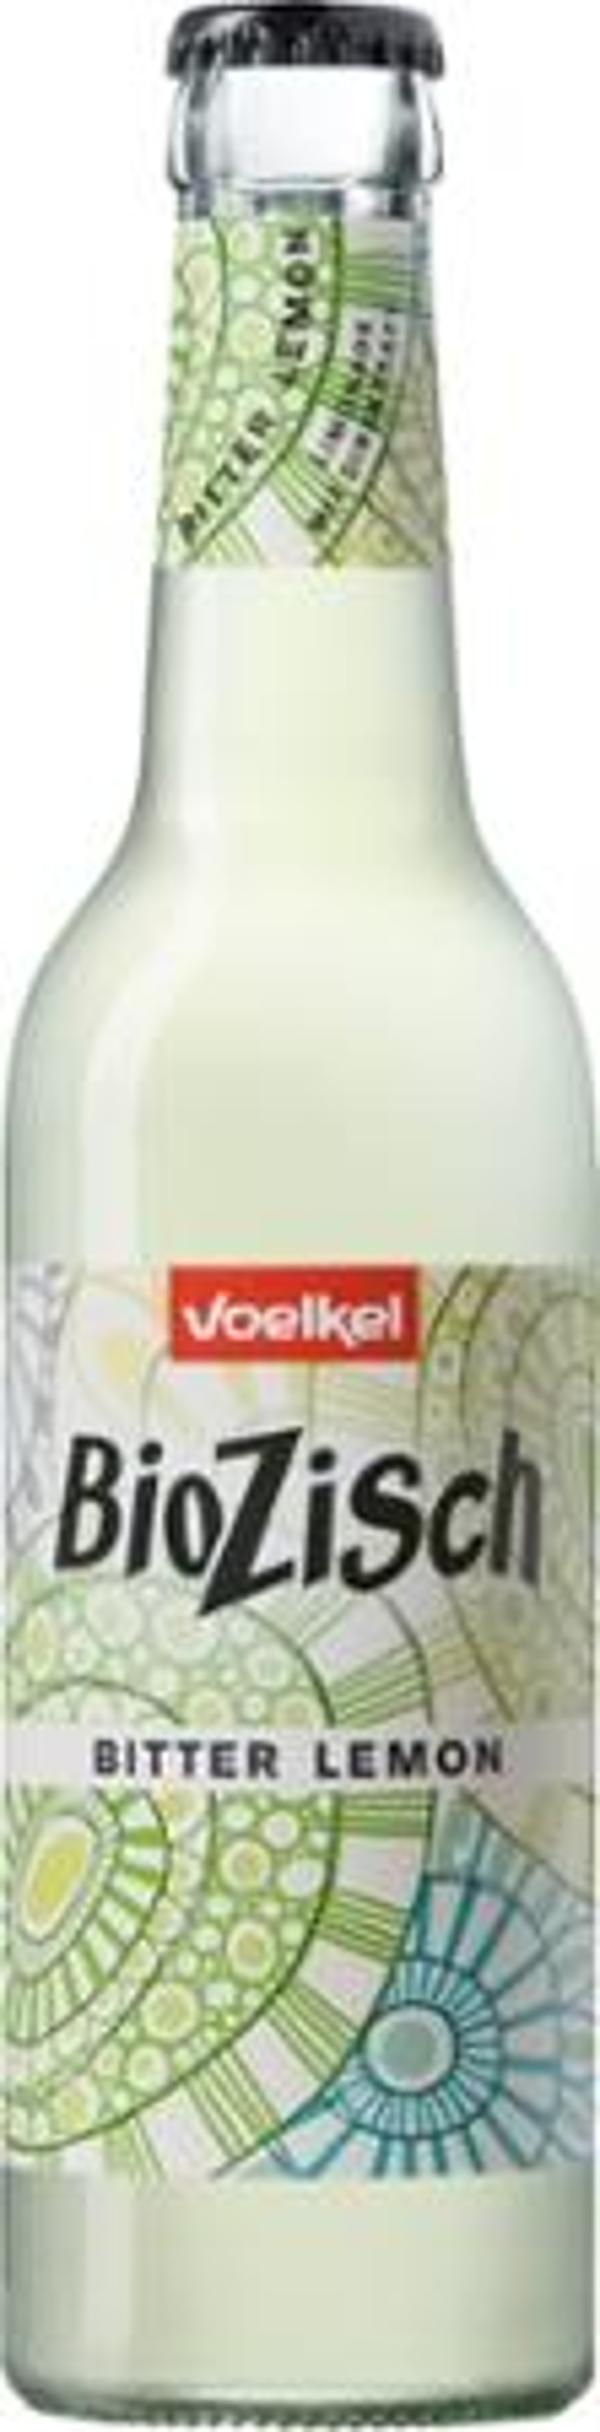 Produktfoto zu BioZisch Bitter Lemon 0,33 l Voelkel